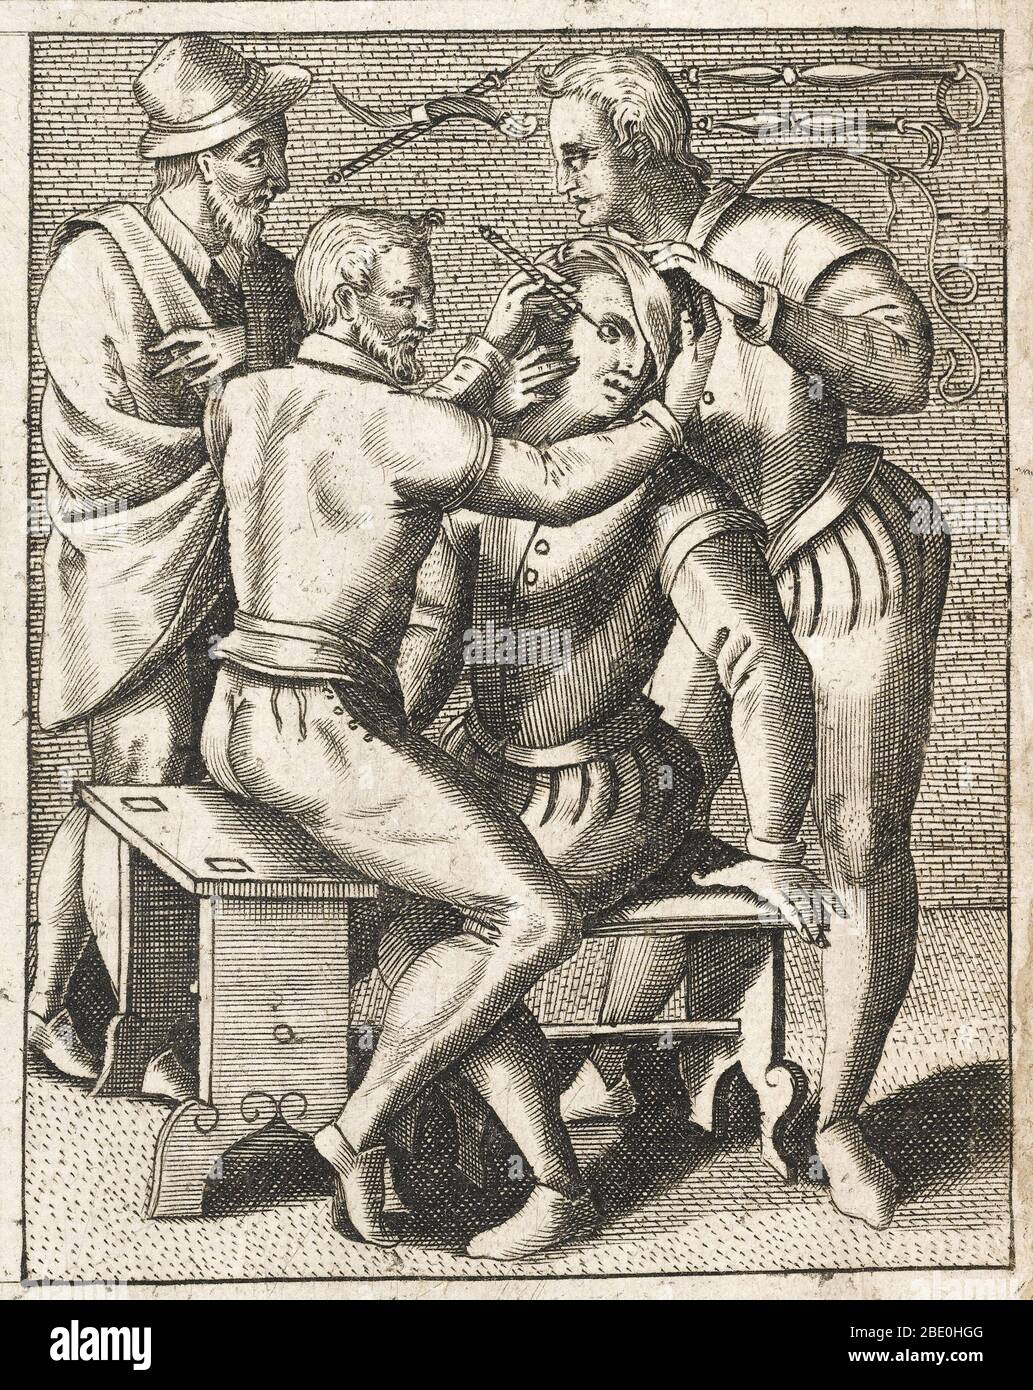 Il paziente viene tenuto in posizione mentre viene eseguita un'operazione sull'occhio, 1594. Sullo sfondo sono illustrate molte tecniche chirurgiche oftalmiche. Foto Stock